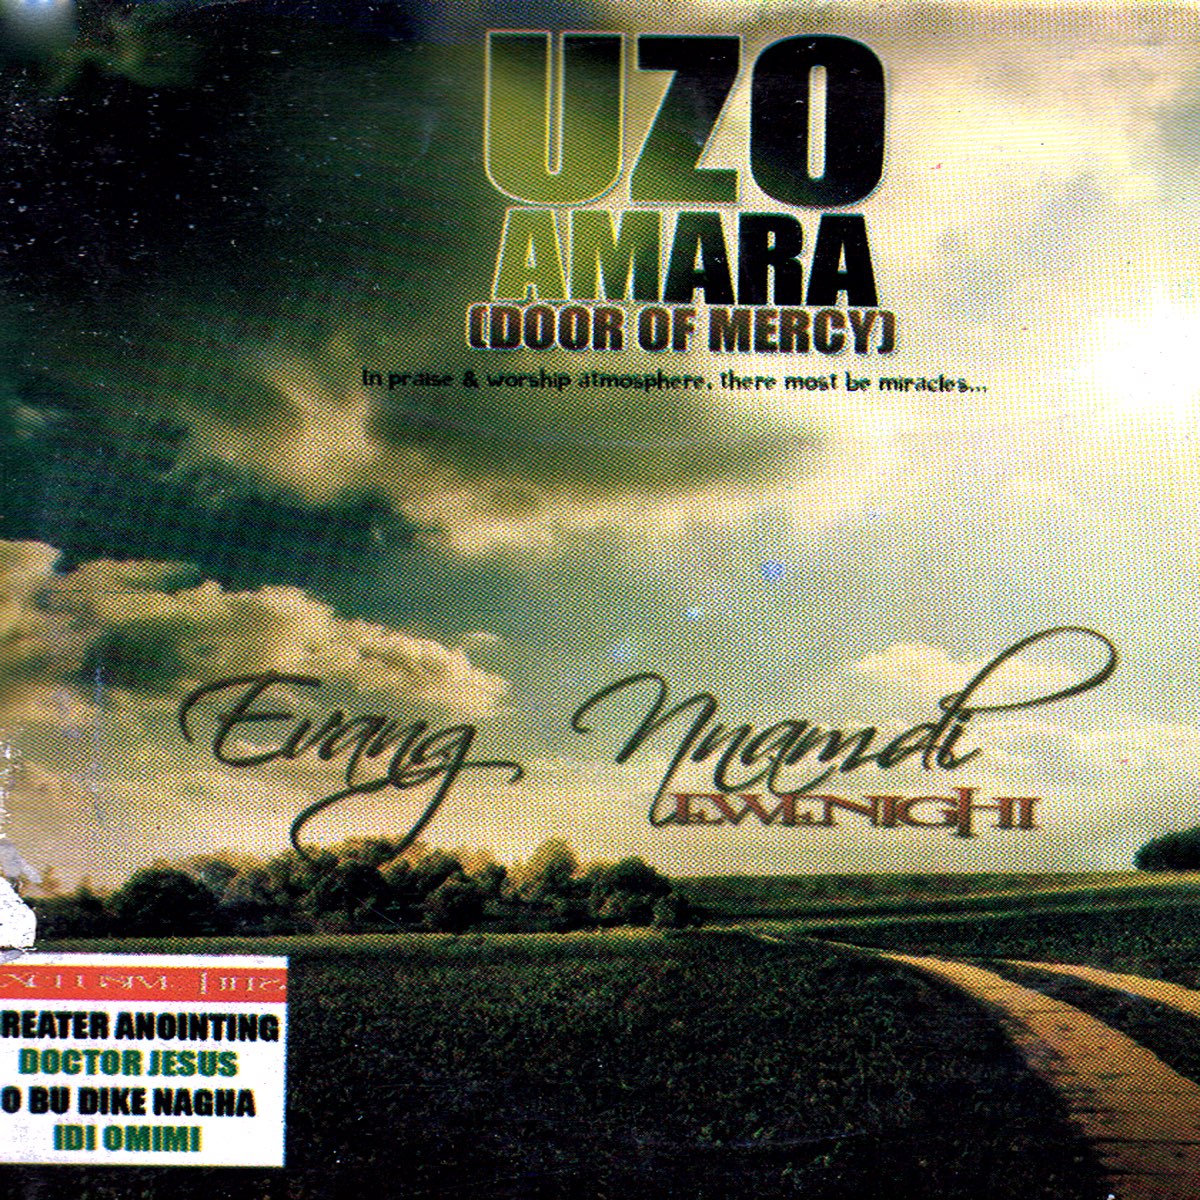 ‎Uzo Amara (Door of Mercy) by Evang. Nnamdi Ewenighi on Apple ...